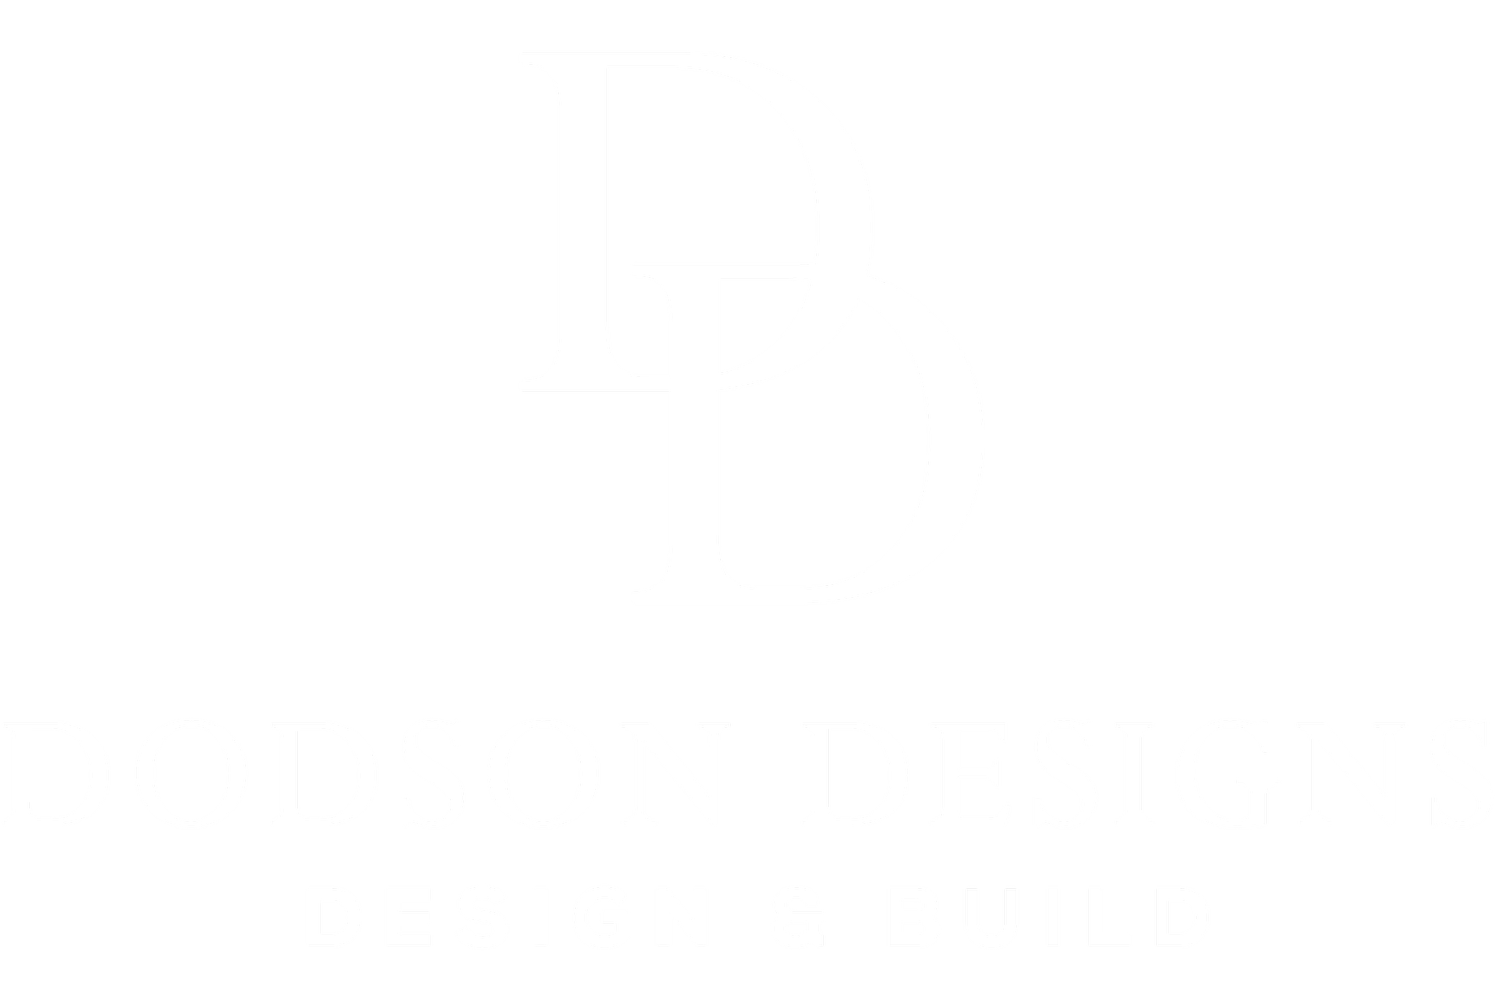 DODSON DESIGNS